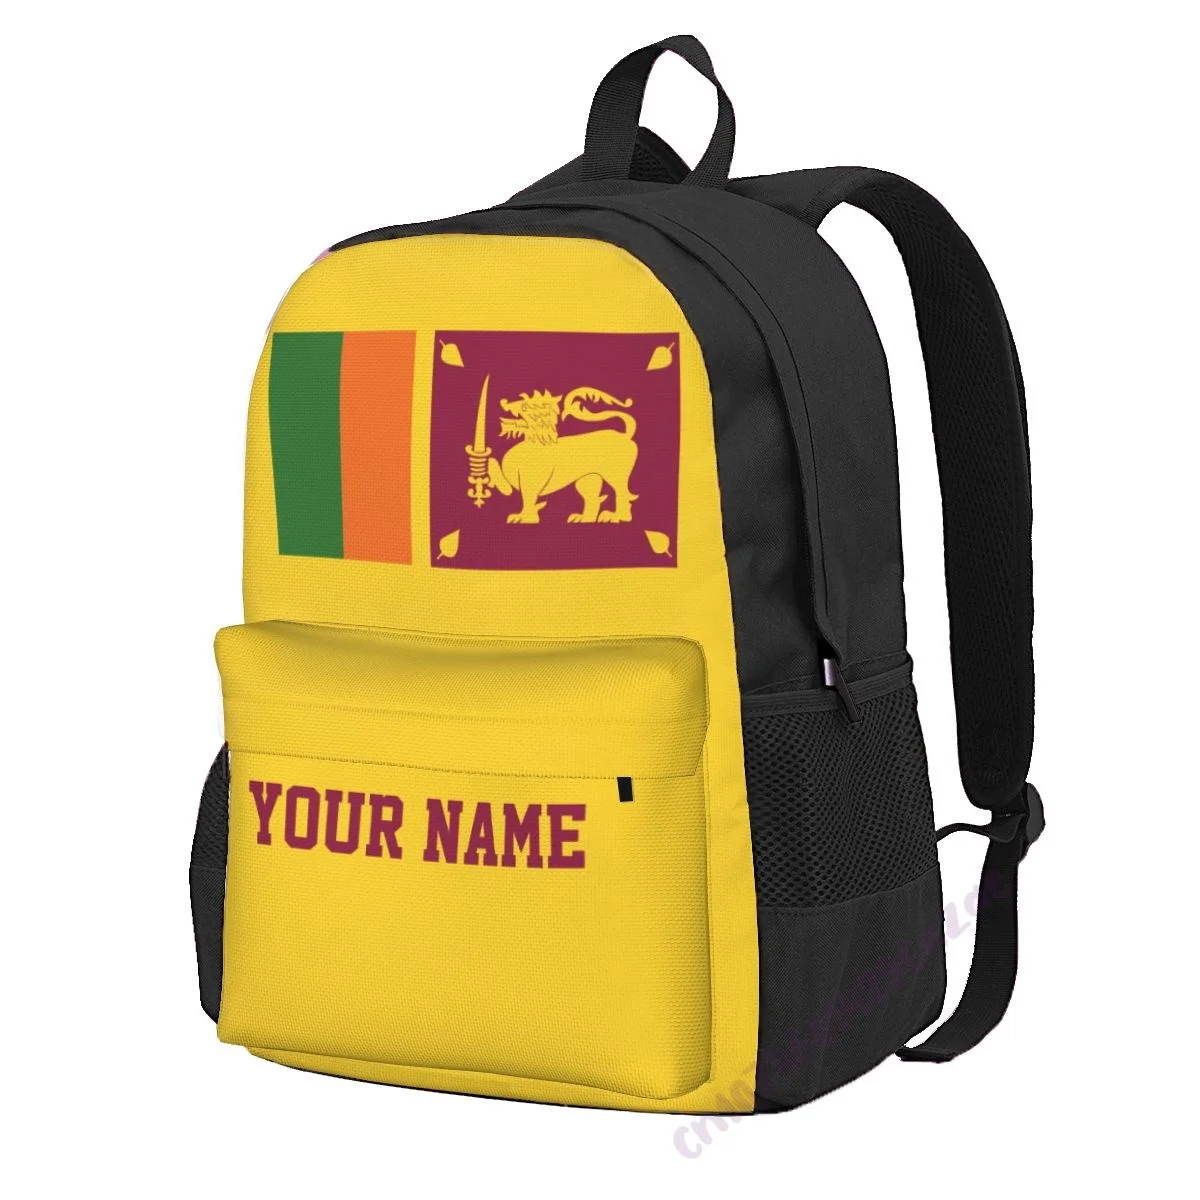 Пользовательское название Рюкзак из полиэстера с флагом Шри-Ланки для мужчин и женщин, Дорожная сумка, Повседневные студенческие походы, Кемпинг